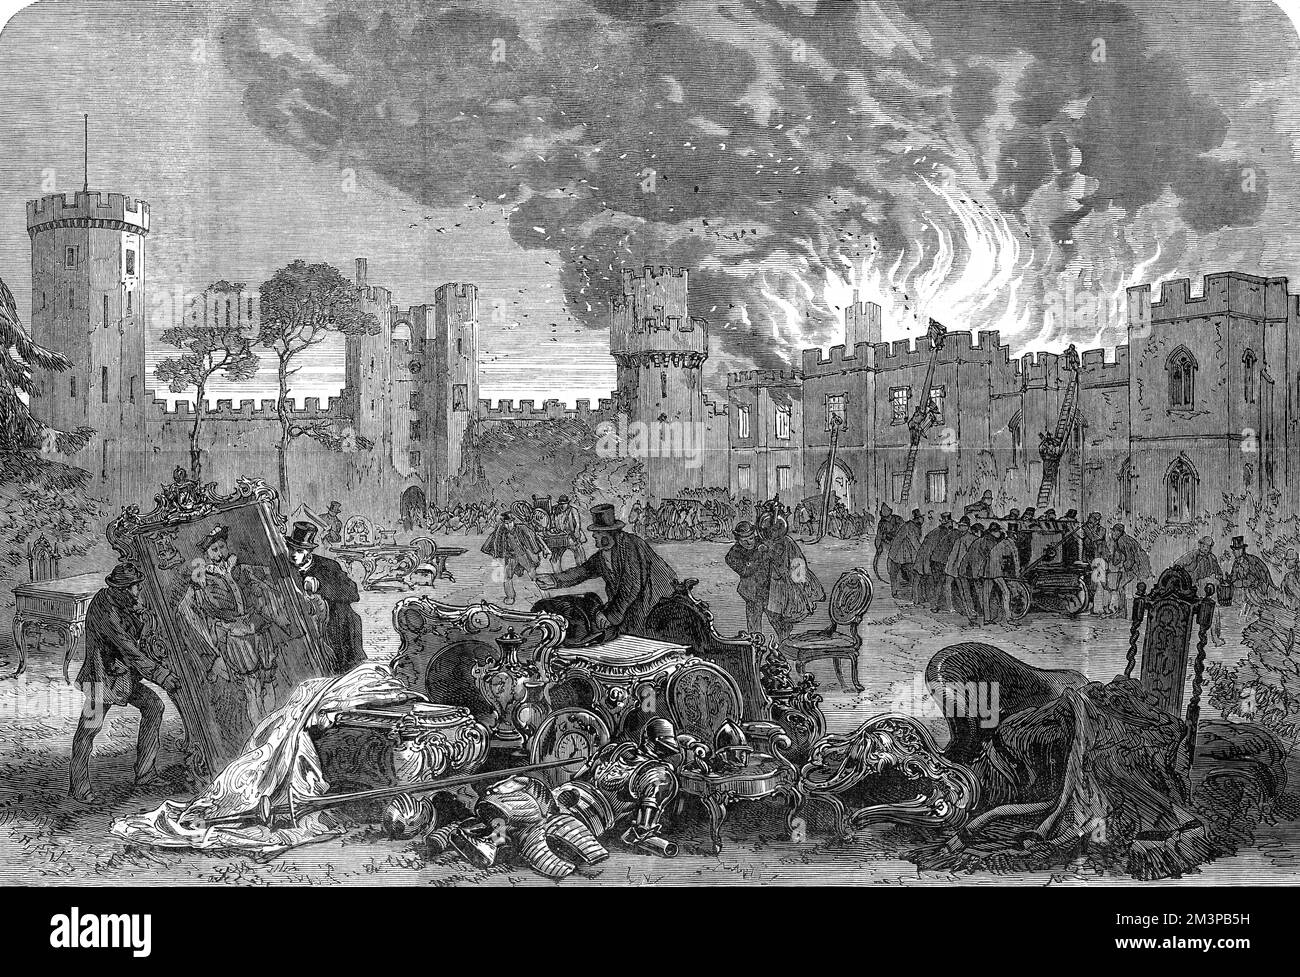 Il fuoco al castello di Warwick. Alcuni dei contenuti del castello sono salvati, tra cui dipinti, armature e mobili, mentre il blaze è affrontato. Data: 1871 Foto Stock